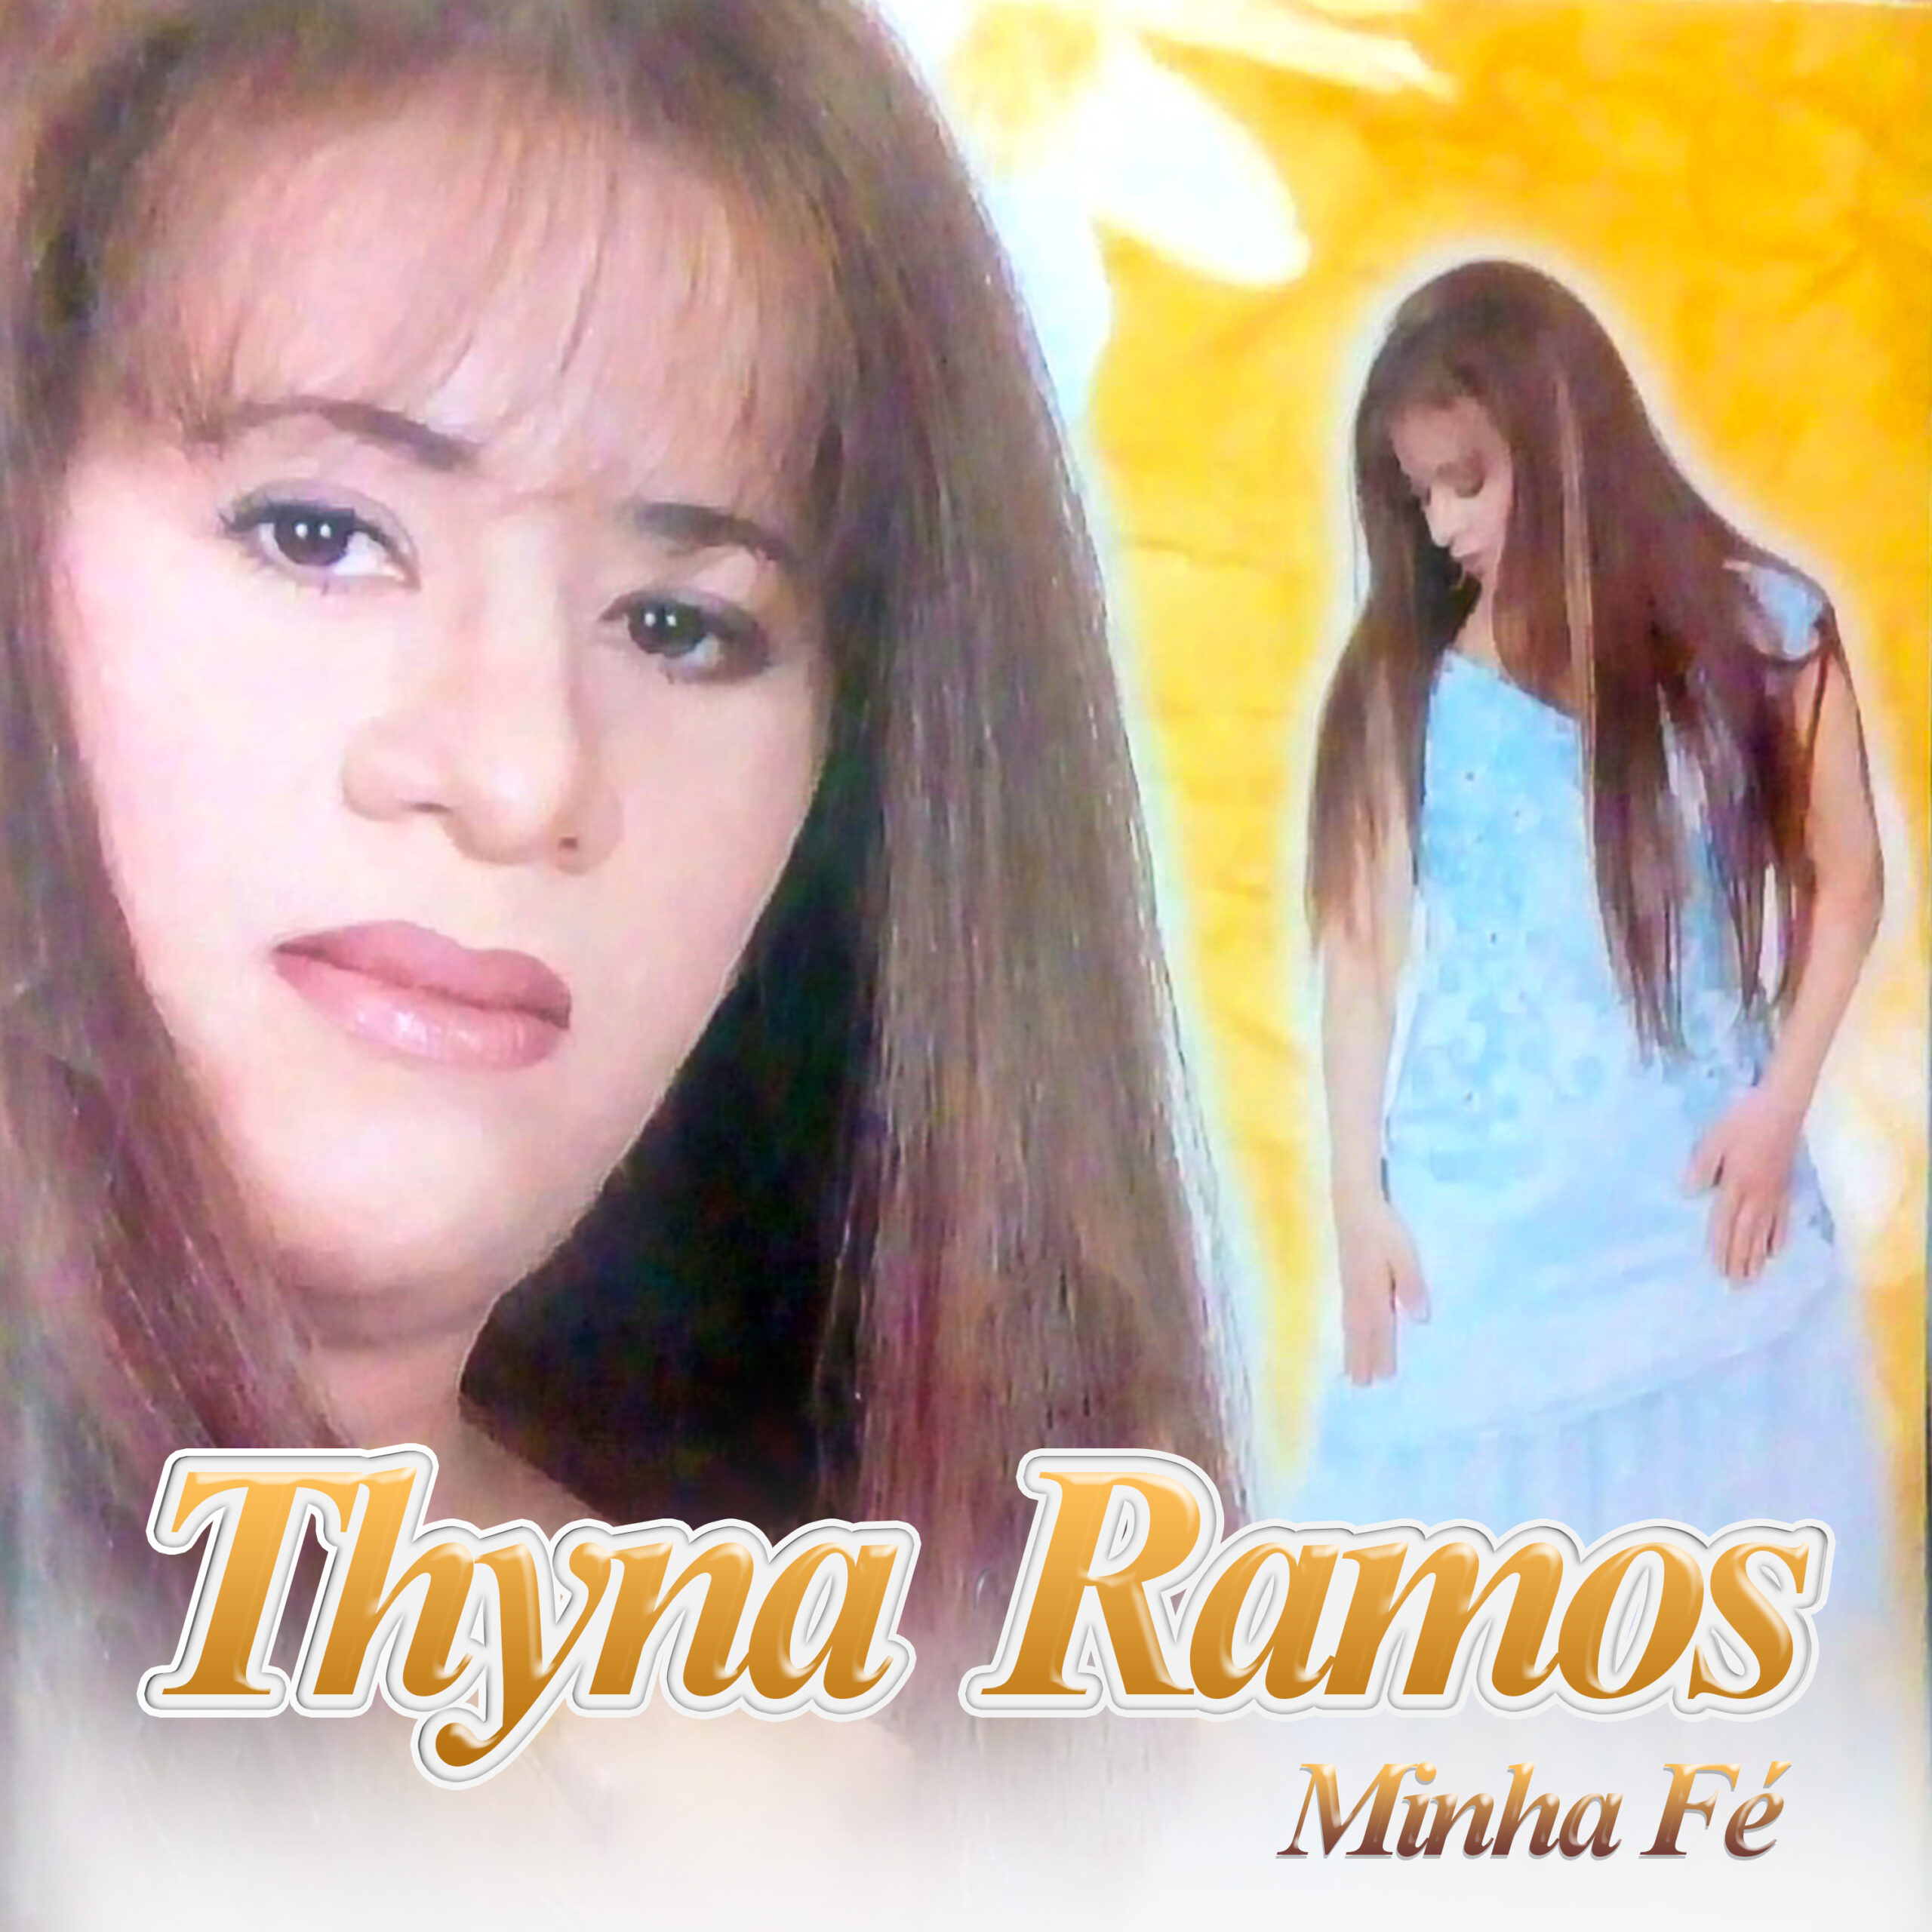 Álbum “Minha Fé” de Thyna Ramos completa a discografia atual da cantora no streaming